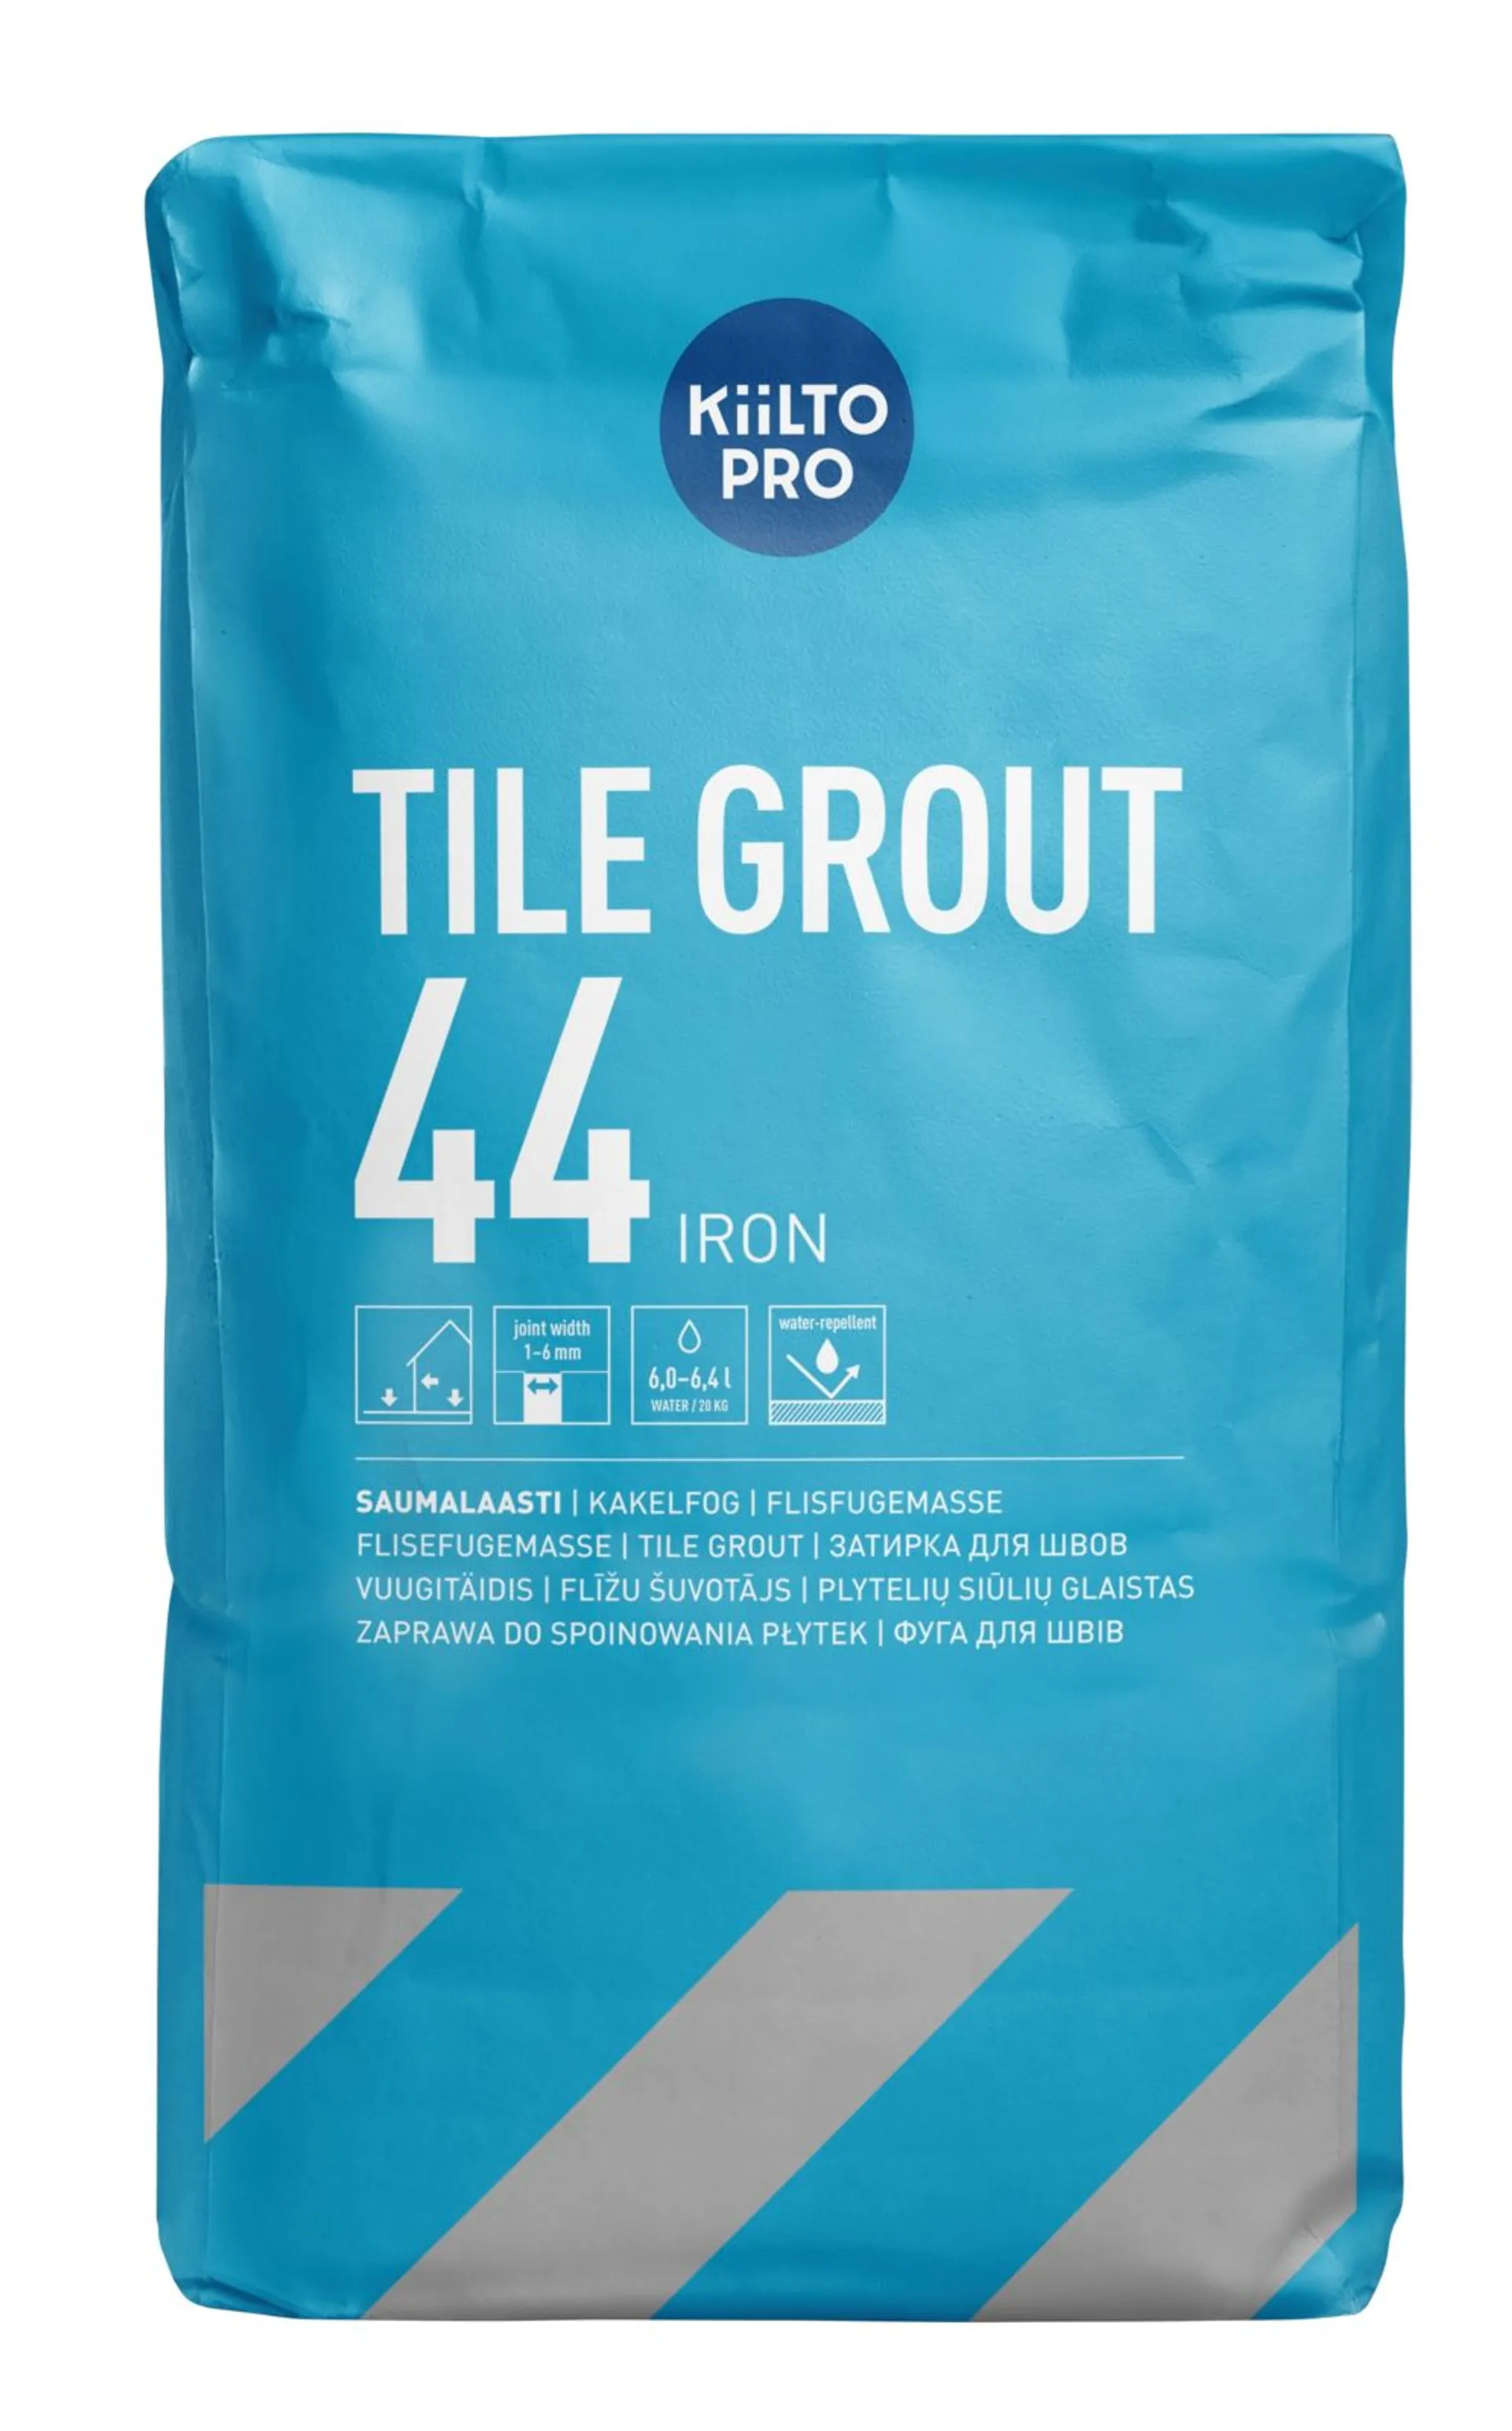 Kiilto Pro Tile grout saumalaasti  44 iron 20 kg